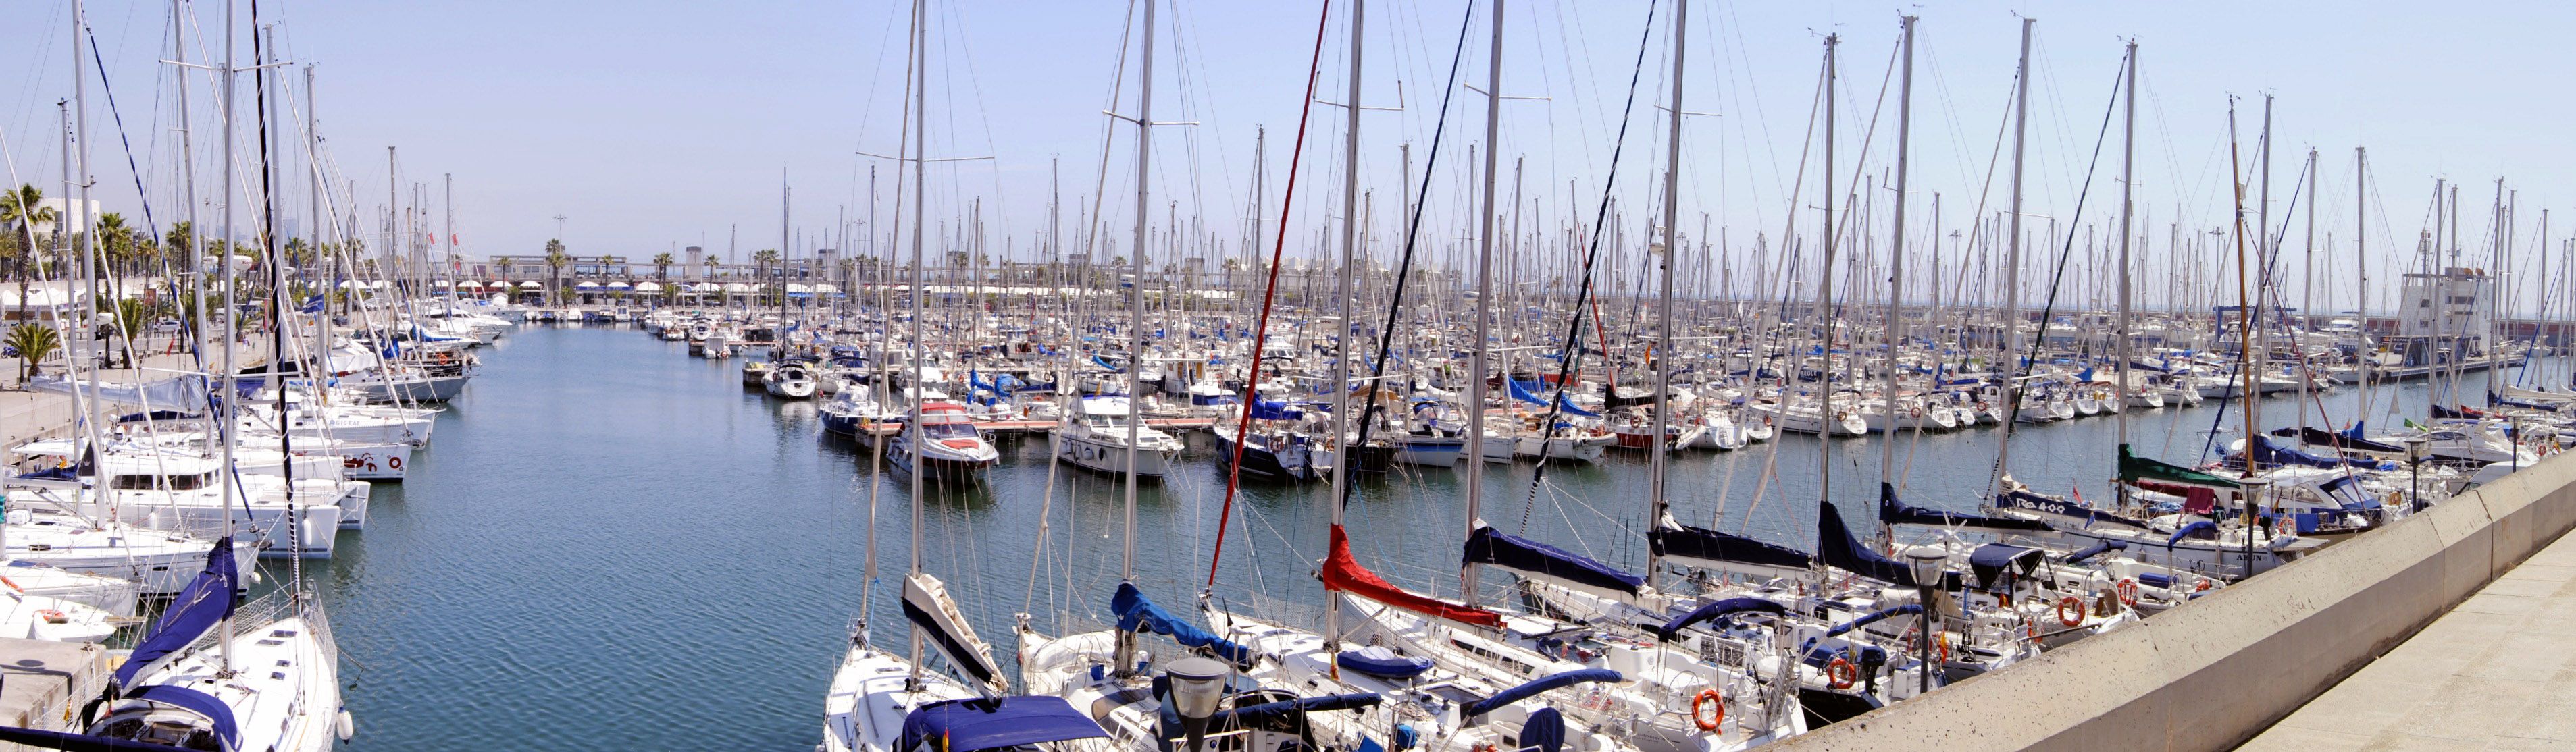 La Generalitat cedeix a Colau la gestió del Port Olímpic